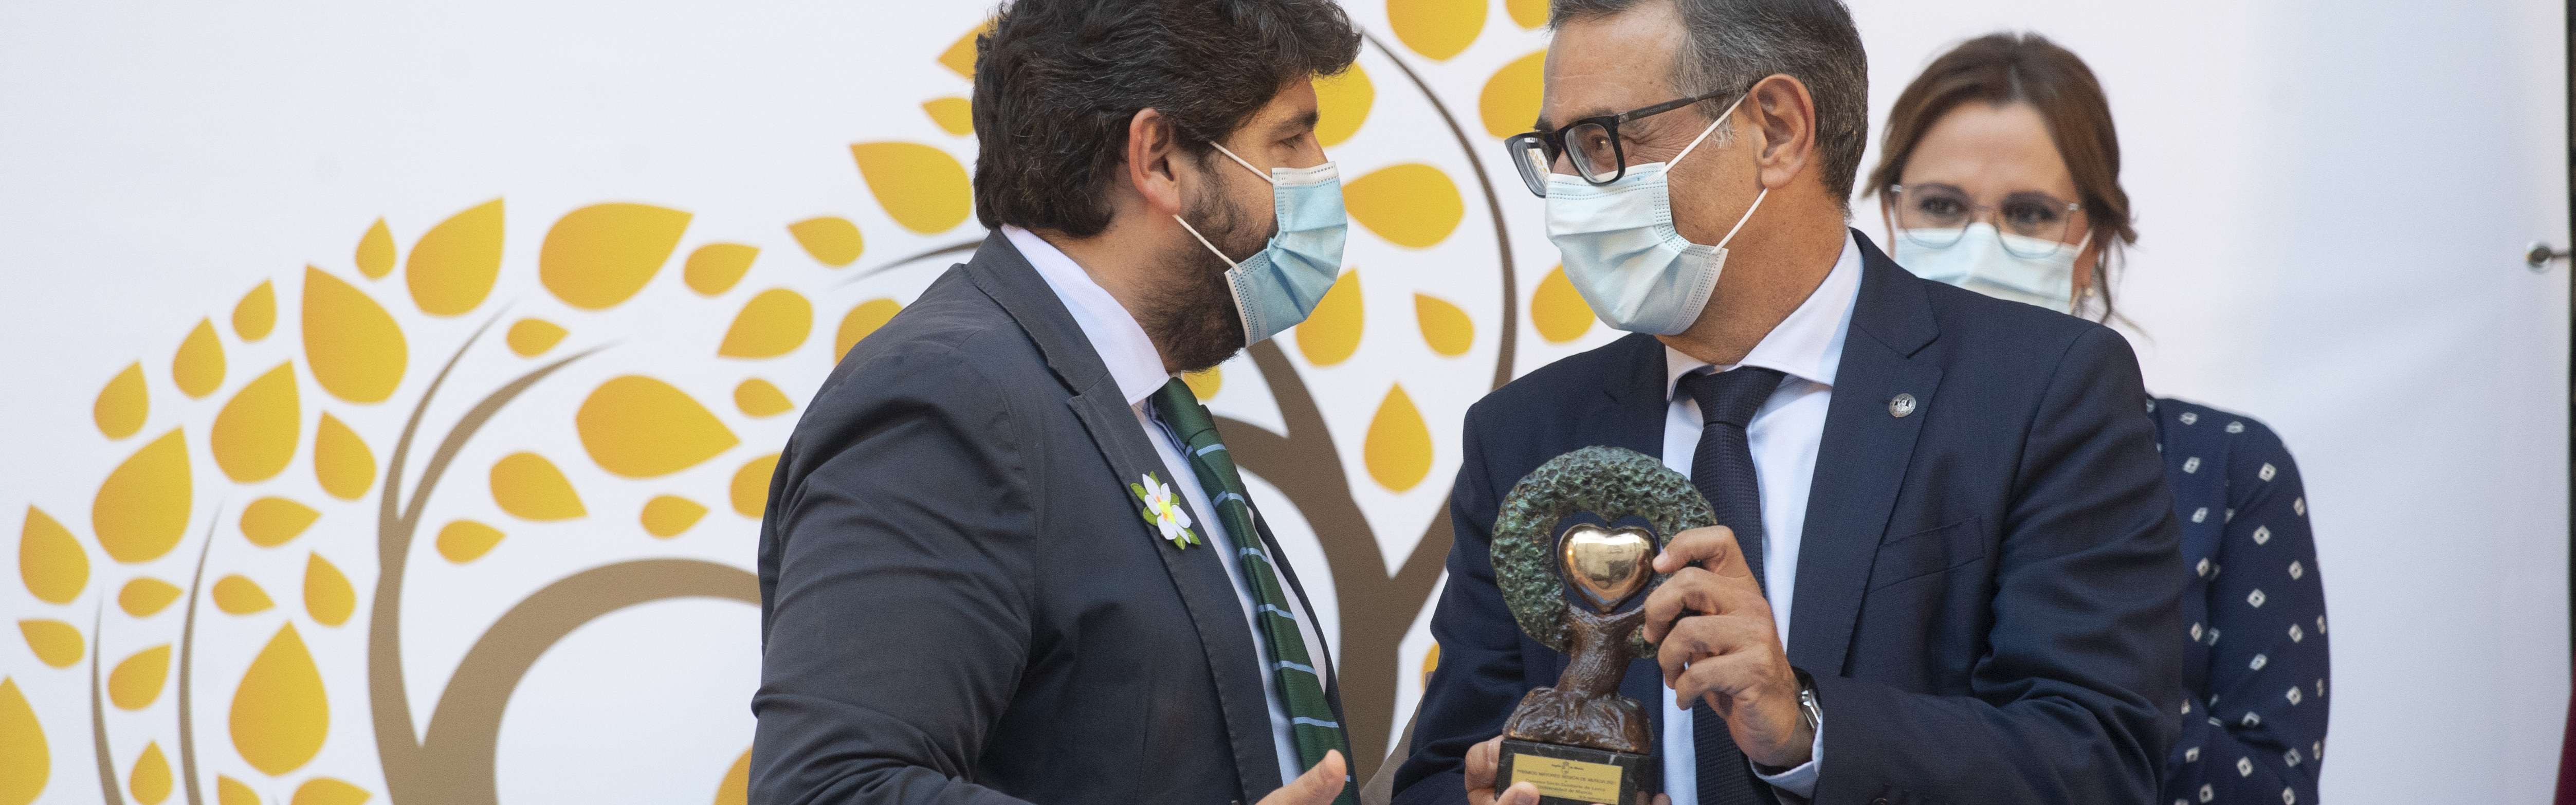 Nota de prensa - La UMU recibe uno de los premios 'Mayores Región de Murcia 2021' por el Campus de Lorca y su especialización sociosanitaria